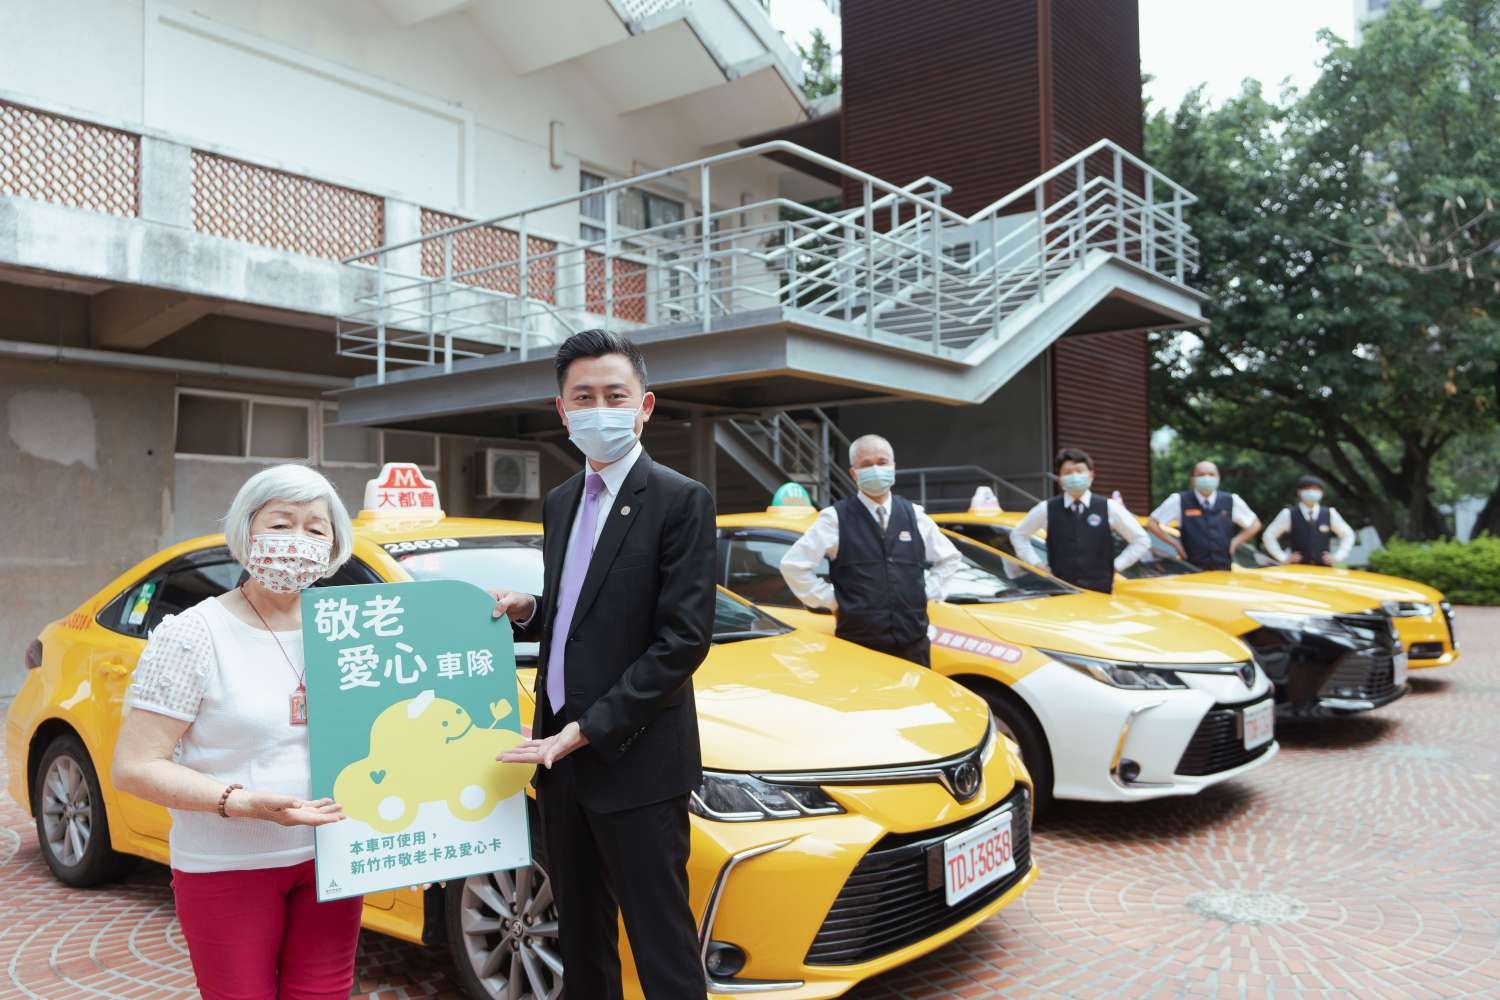 新竹市政府發行的敬老愛心卡開放搭乘計程車，單趟車資補助100點，從每月600點中折抵。